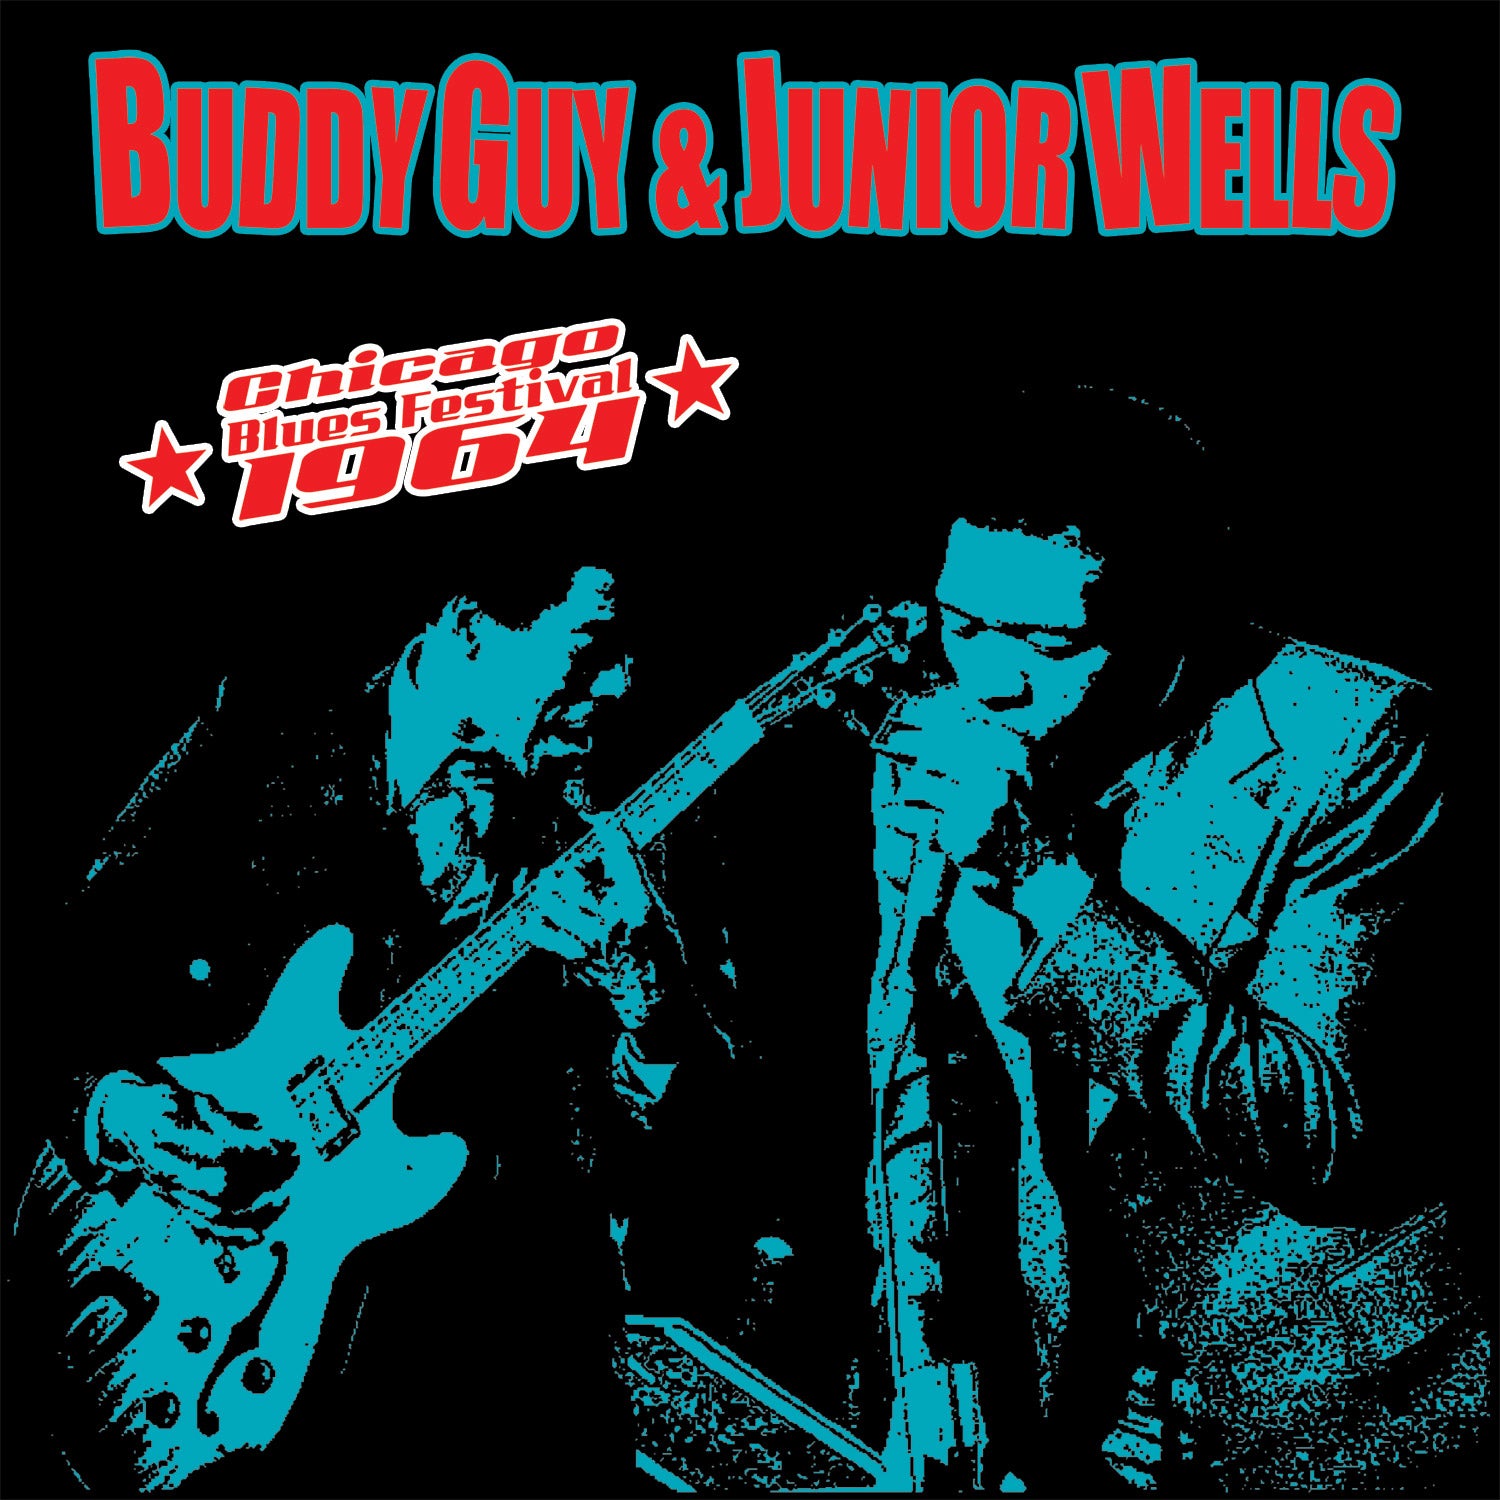 Buddy Guy & Junior Wells - Chicago Blues Festival 64'